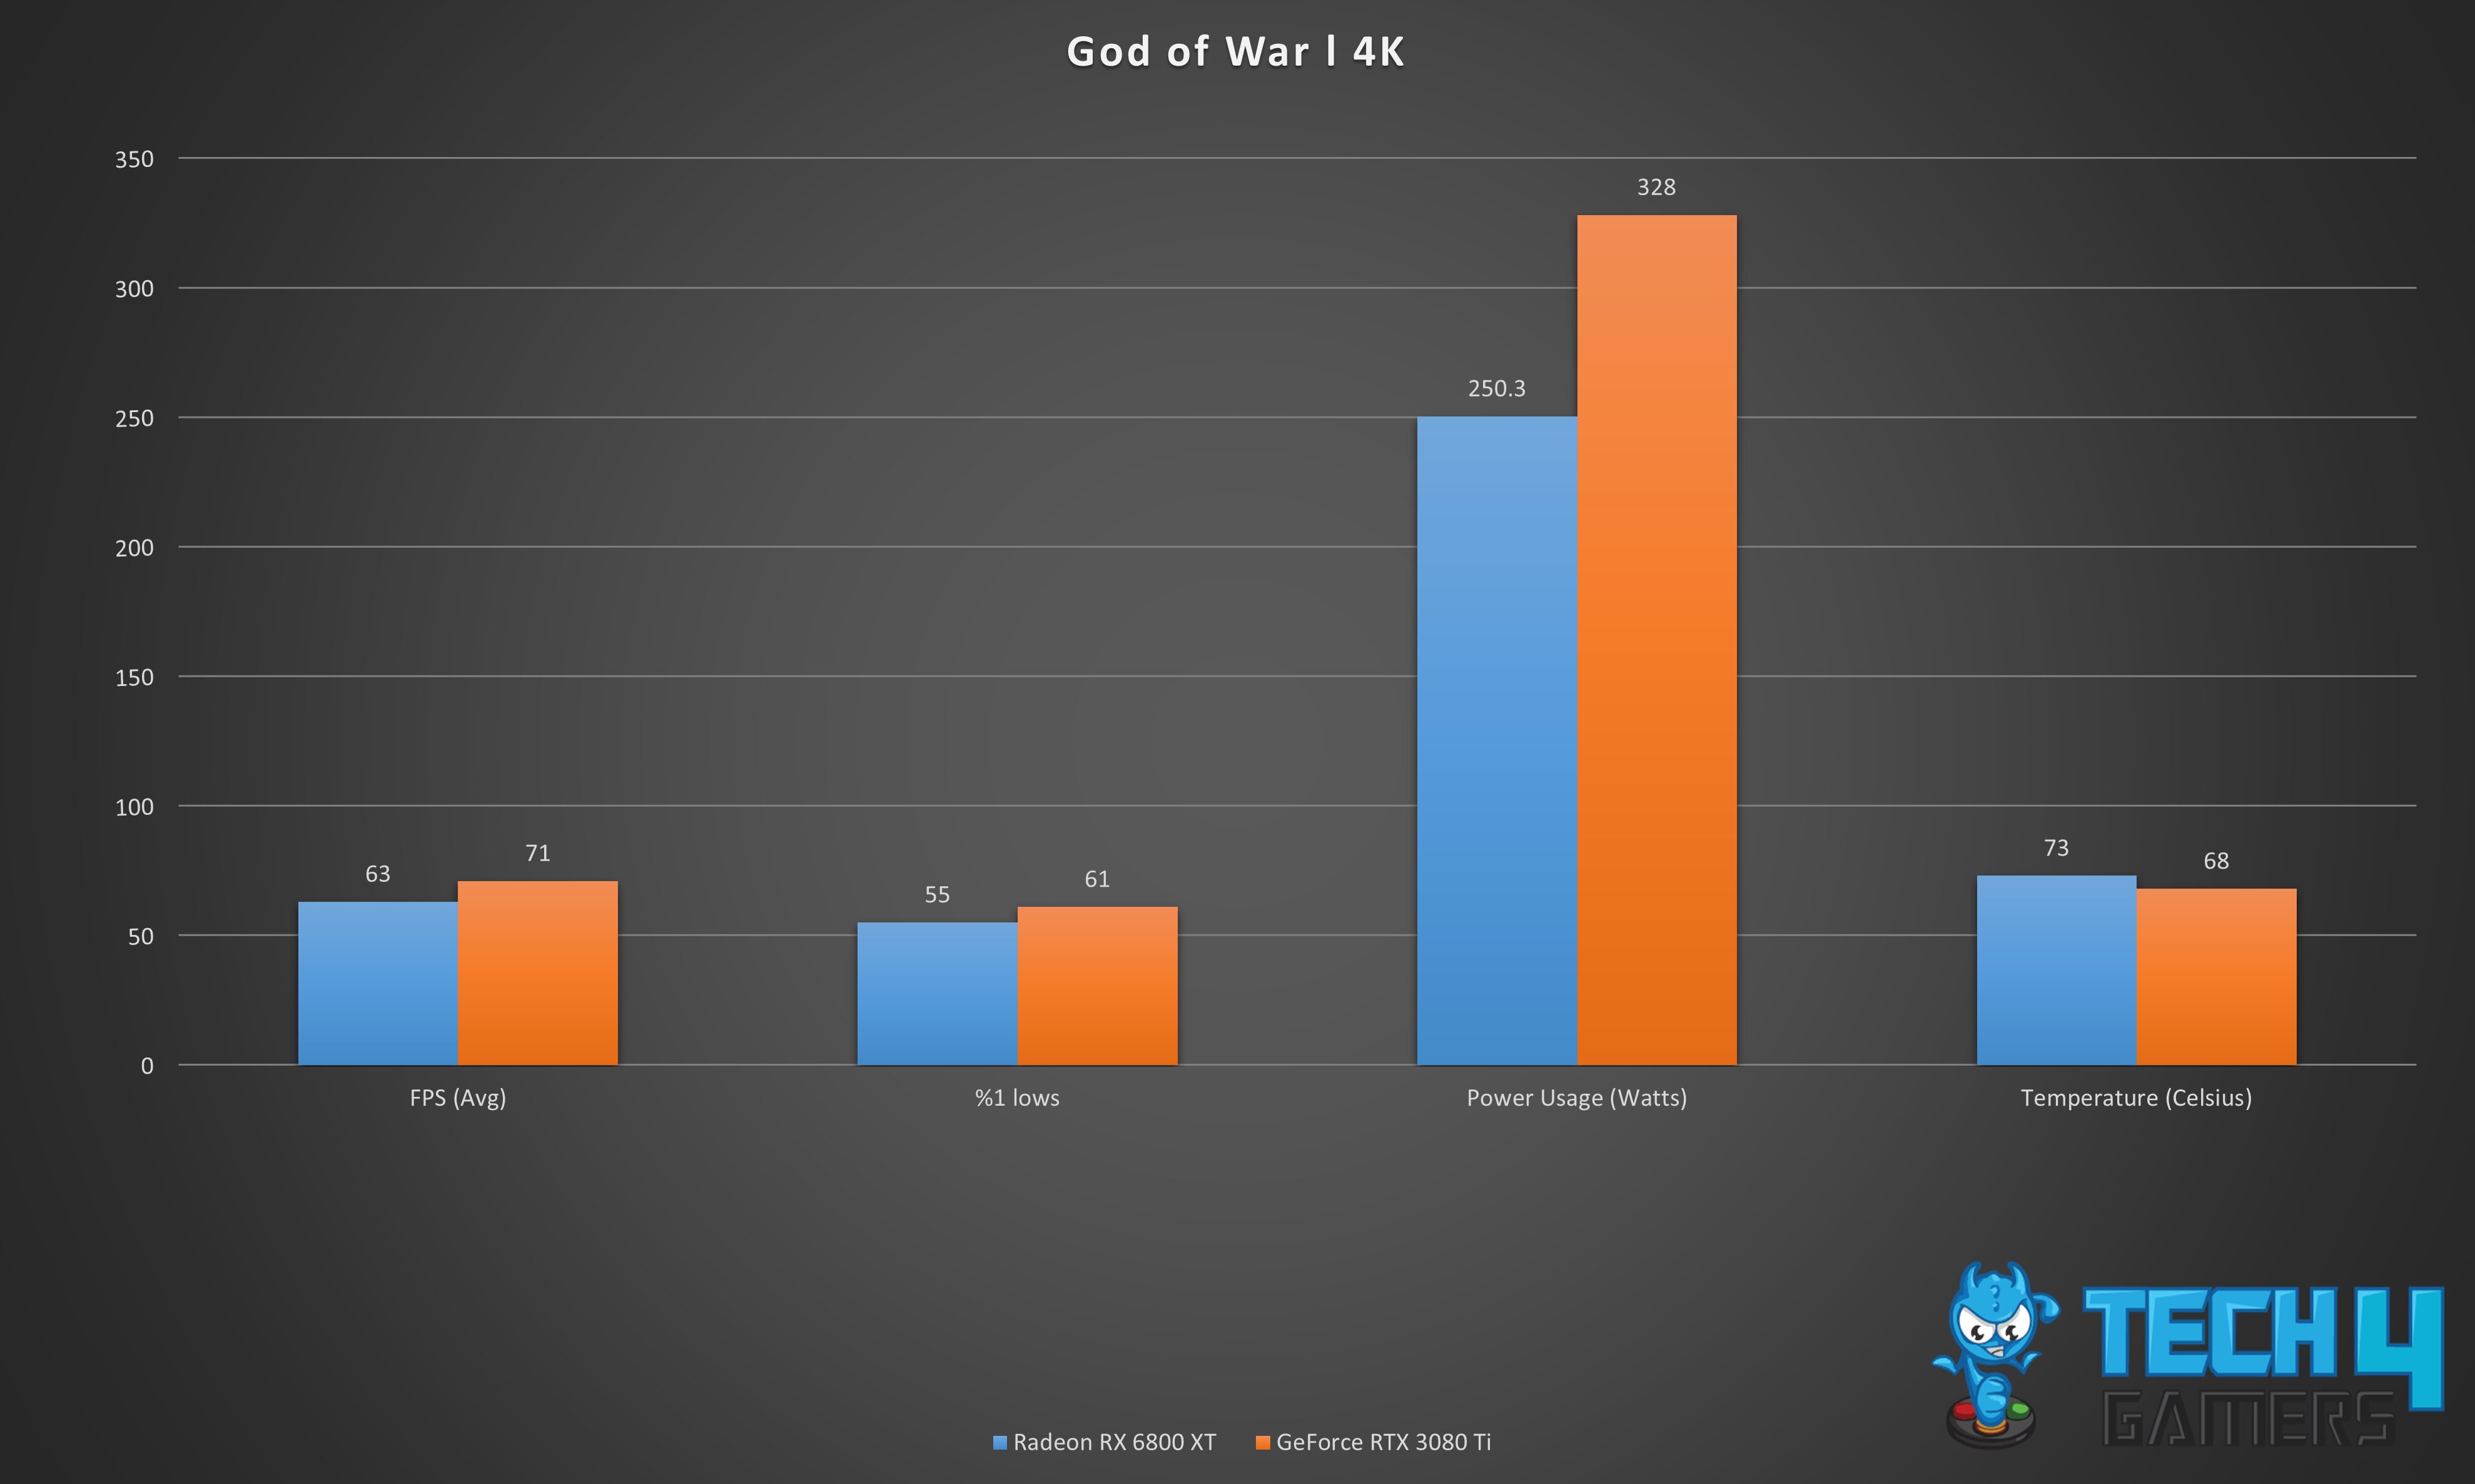 God of War 4K